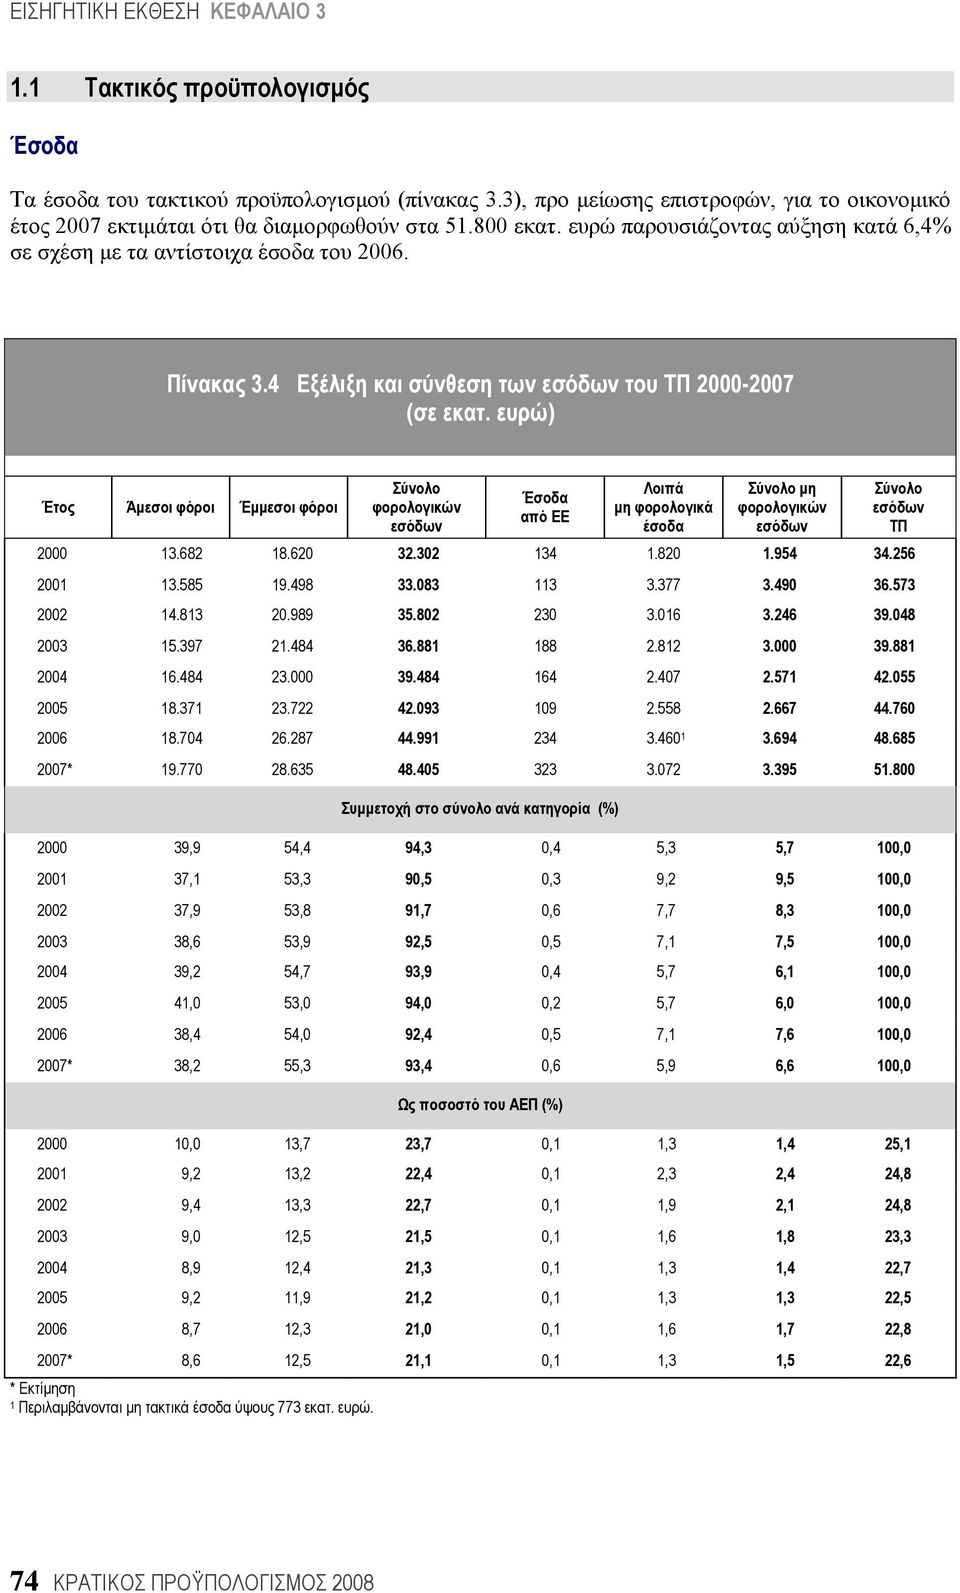 4 Εξέλιξη και σύνθεση των εσόδων του ΤΠ 2000-2007 Έτος Άμεσοι φόροι Έμμεσοι φόροι Σύνολο φορολογικών εσόδων Έσοδα από ΕΕ Λοιπά μη φορολογικά έσοδα Σύνολο μη φορολογικών εσόδων Σύνολο εσόδων ΤΠ 2000